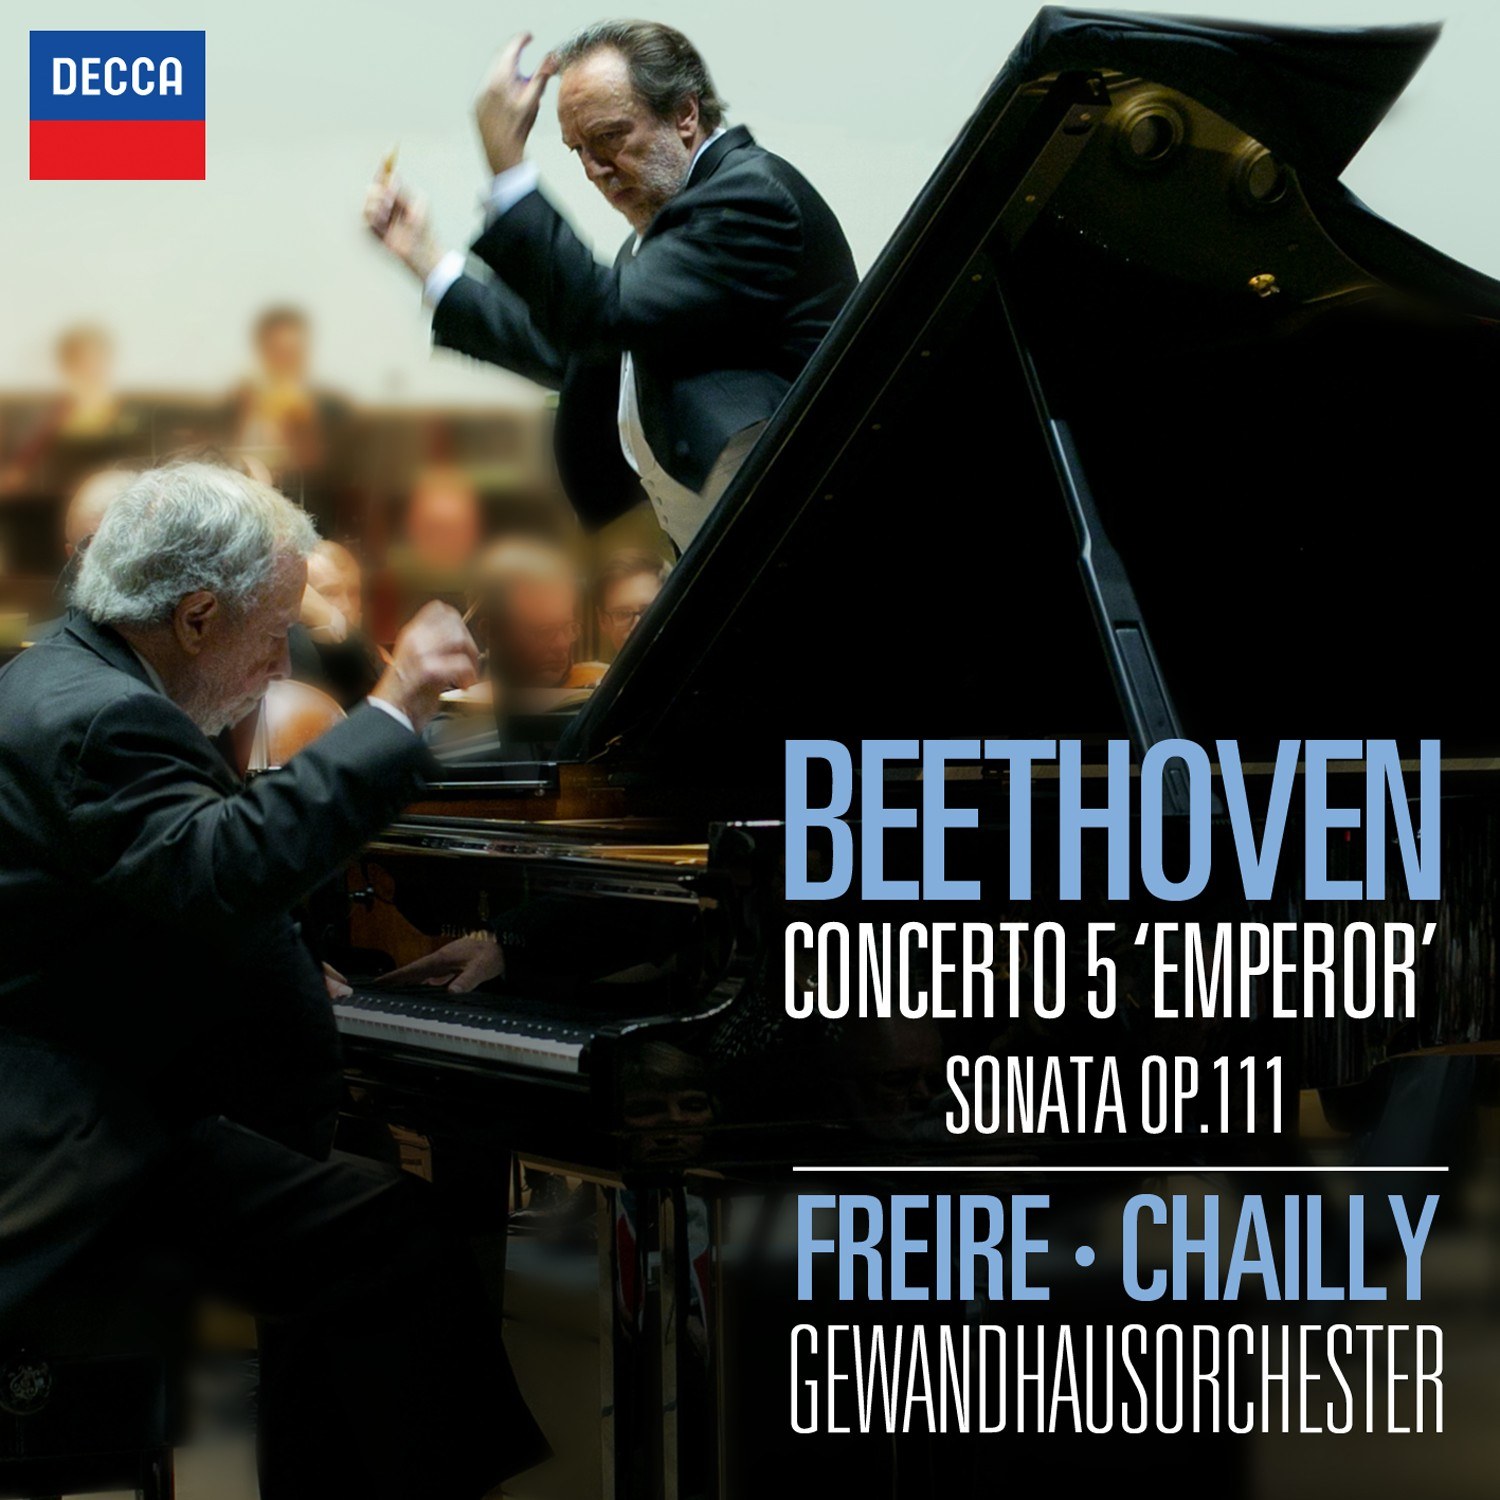 넬손 프레이레 / 리카르도 샤이(Riccardo Chailly / Nelson Freire) - 베토벤 피아노 협주곡 5번, 소나타 32번(Beethoven: Piano Concerto No.5 'Emperor' & Piano Sonata No.32)